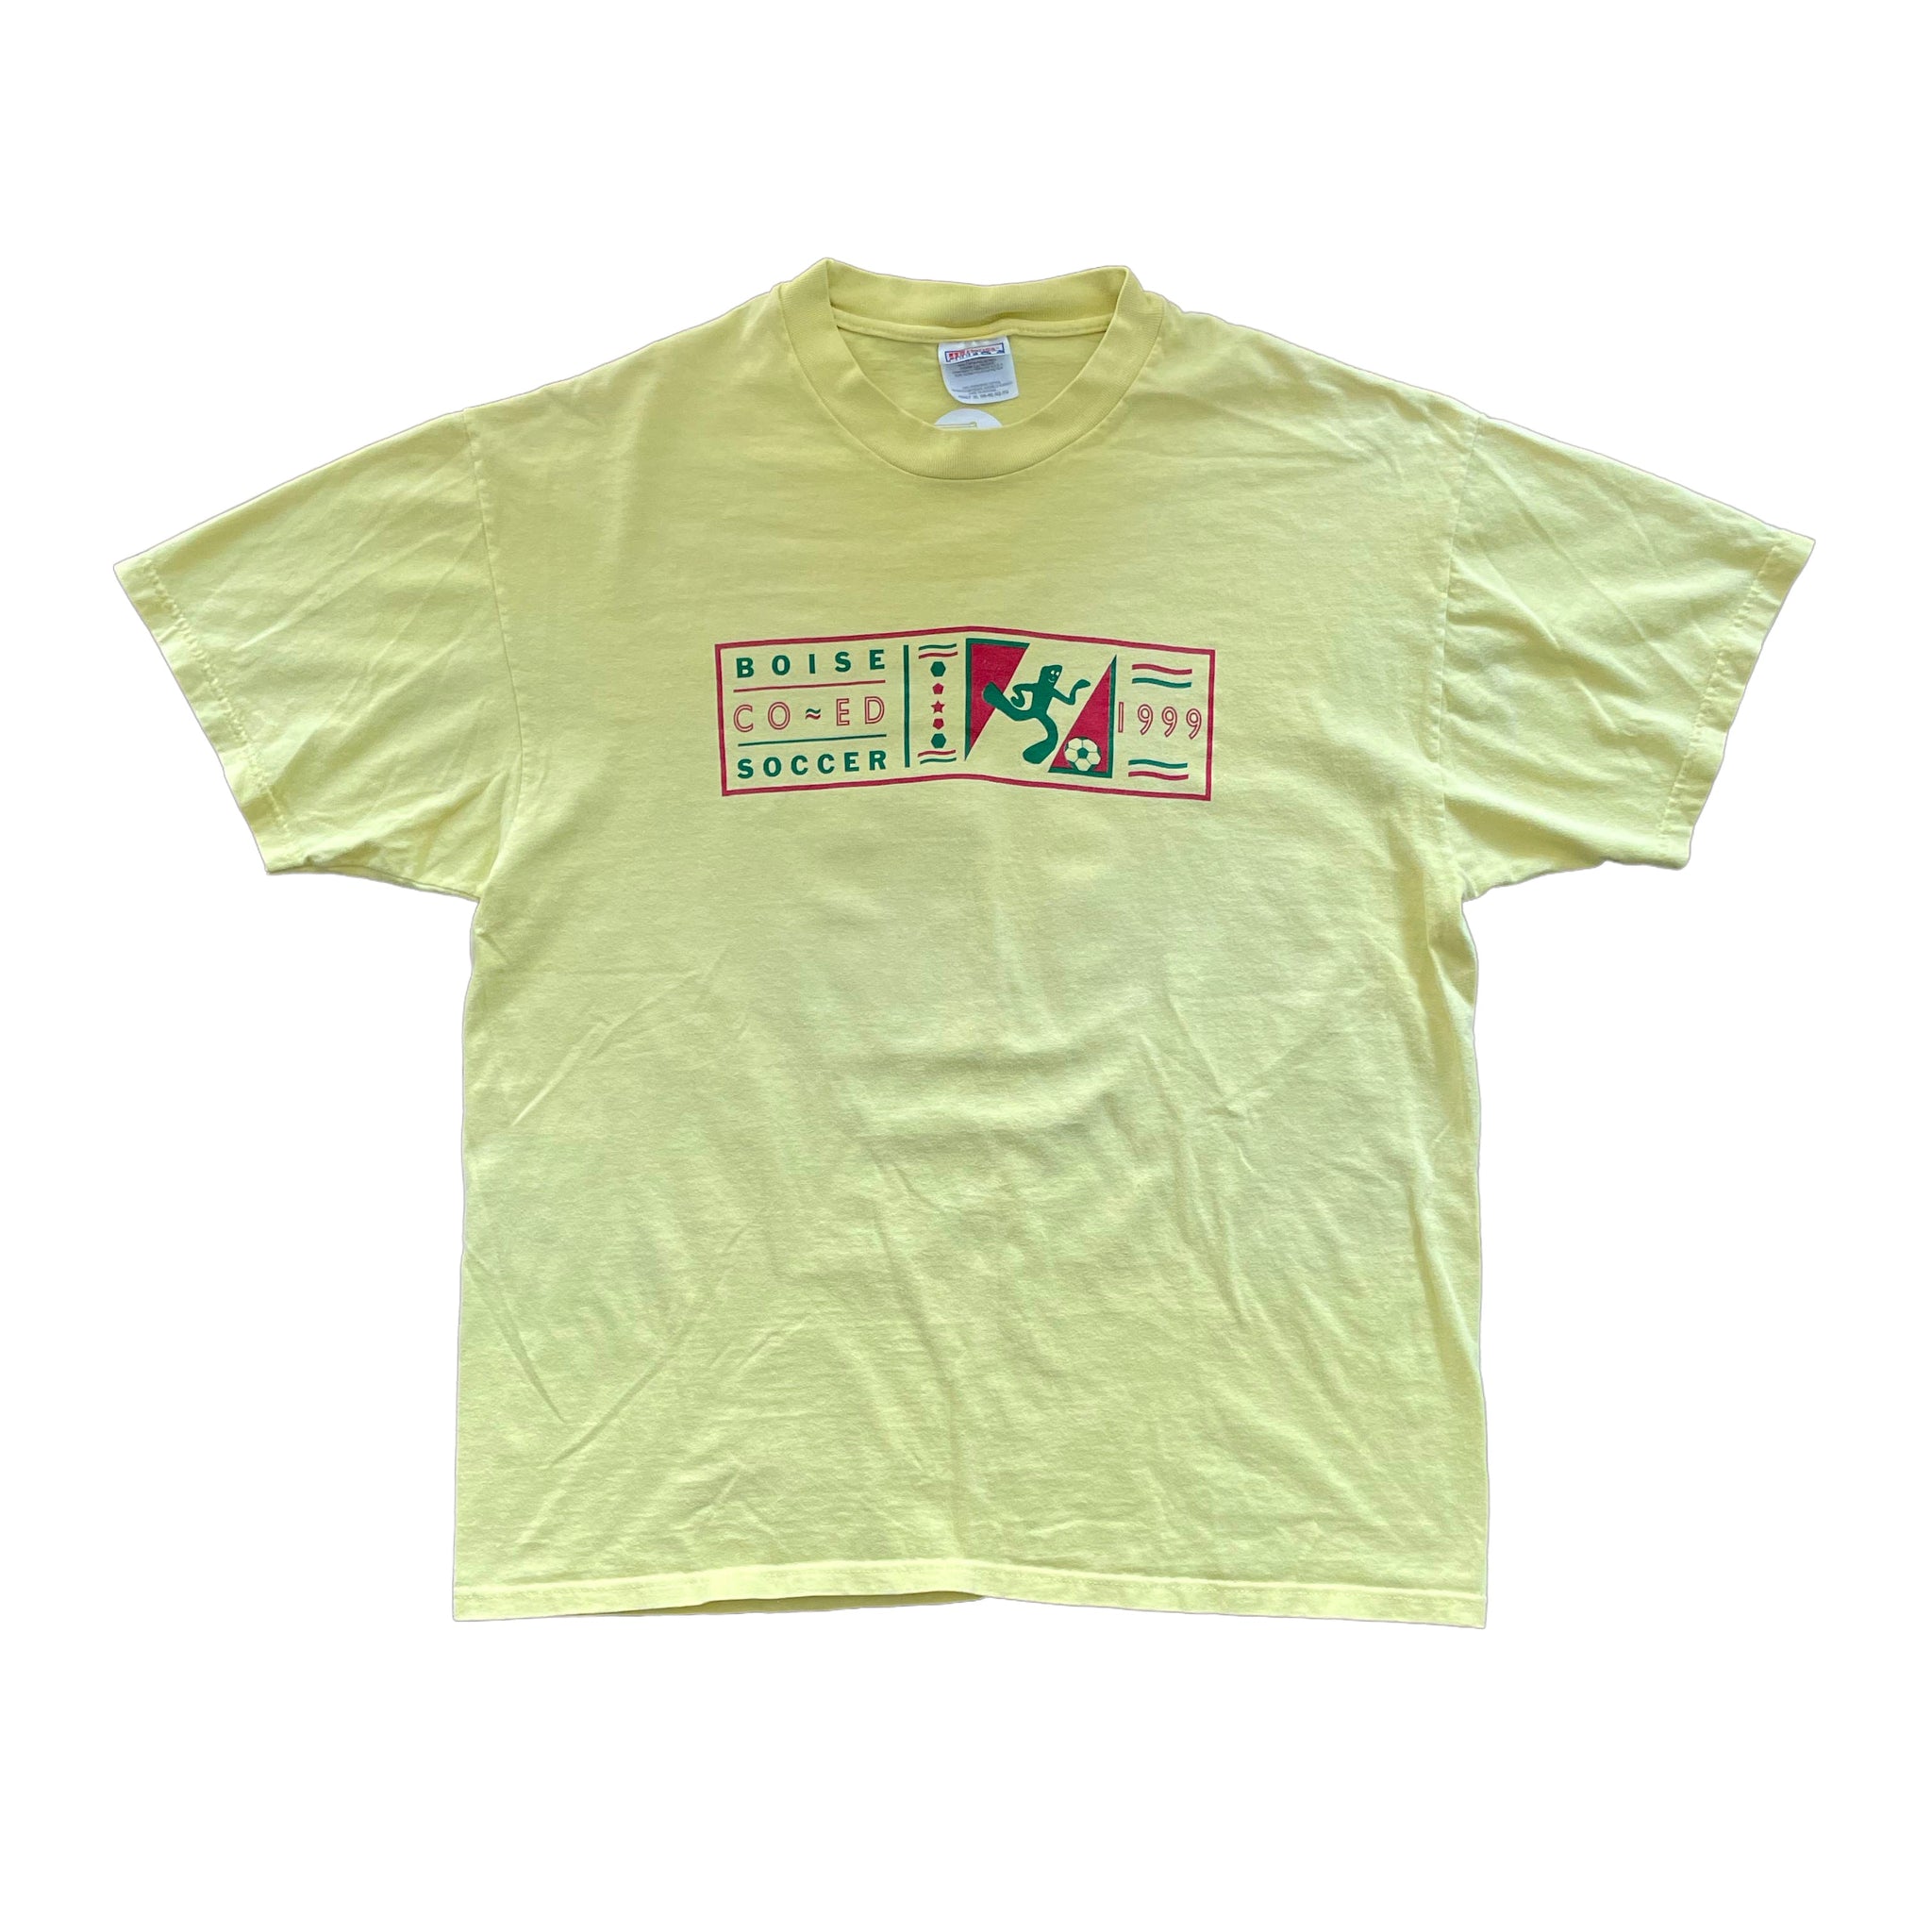 1999 Boise Co-Ed "Gumbro" T-Shirt - XL